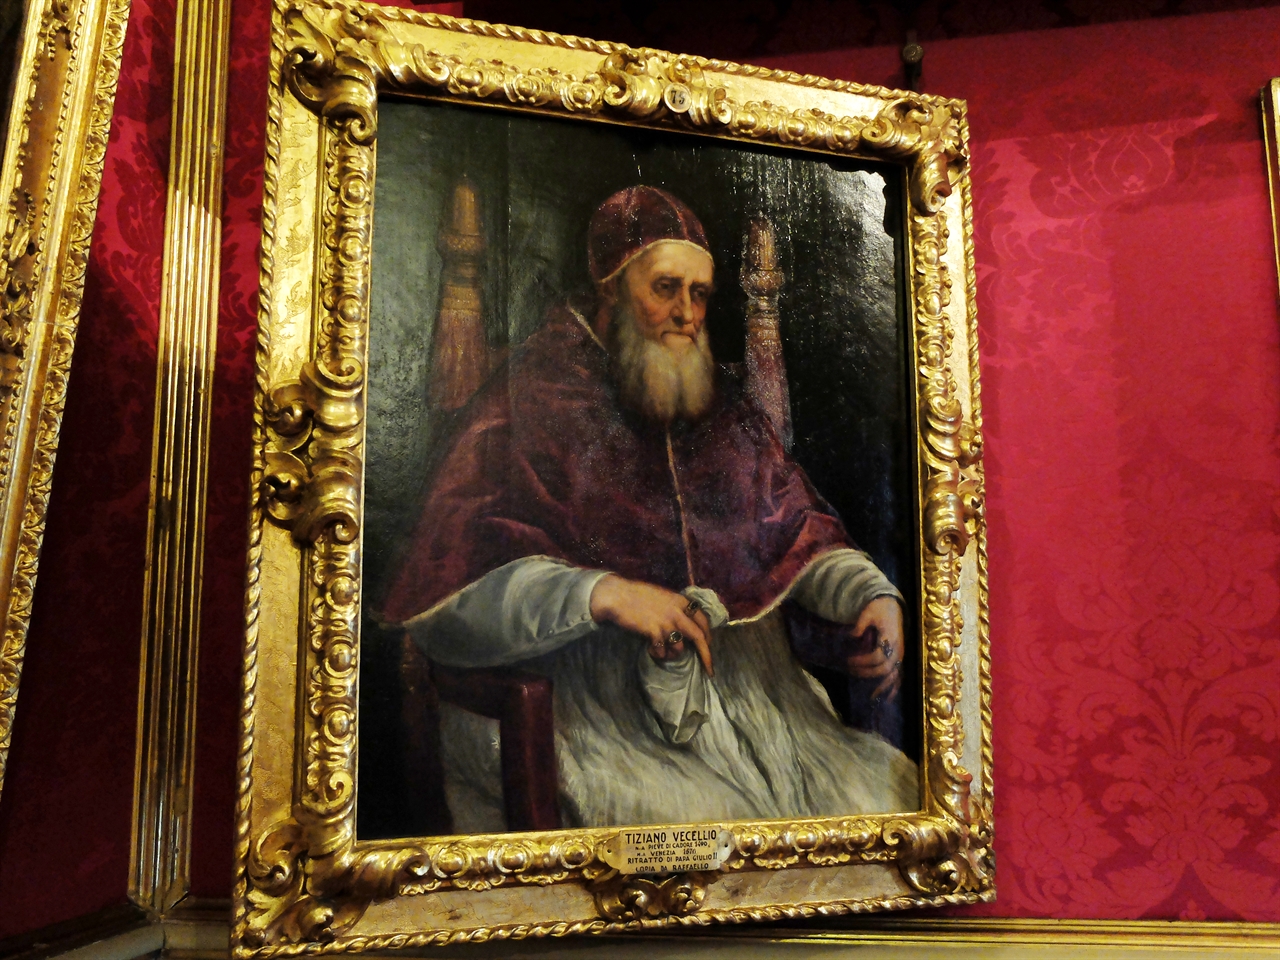 티치아노, '교황 율리우스 2세의 초상', 피렌체 팔라티나미술관. 우피치미술관에서 만난 라파엘로의 그림을 티치아노가 모방한 그림으로 거장에 의한 거장의 오마주를 보여주는 작품입니다.